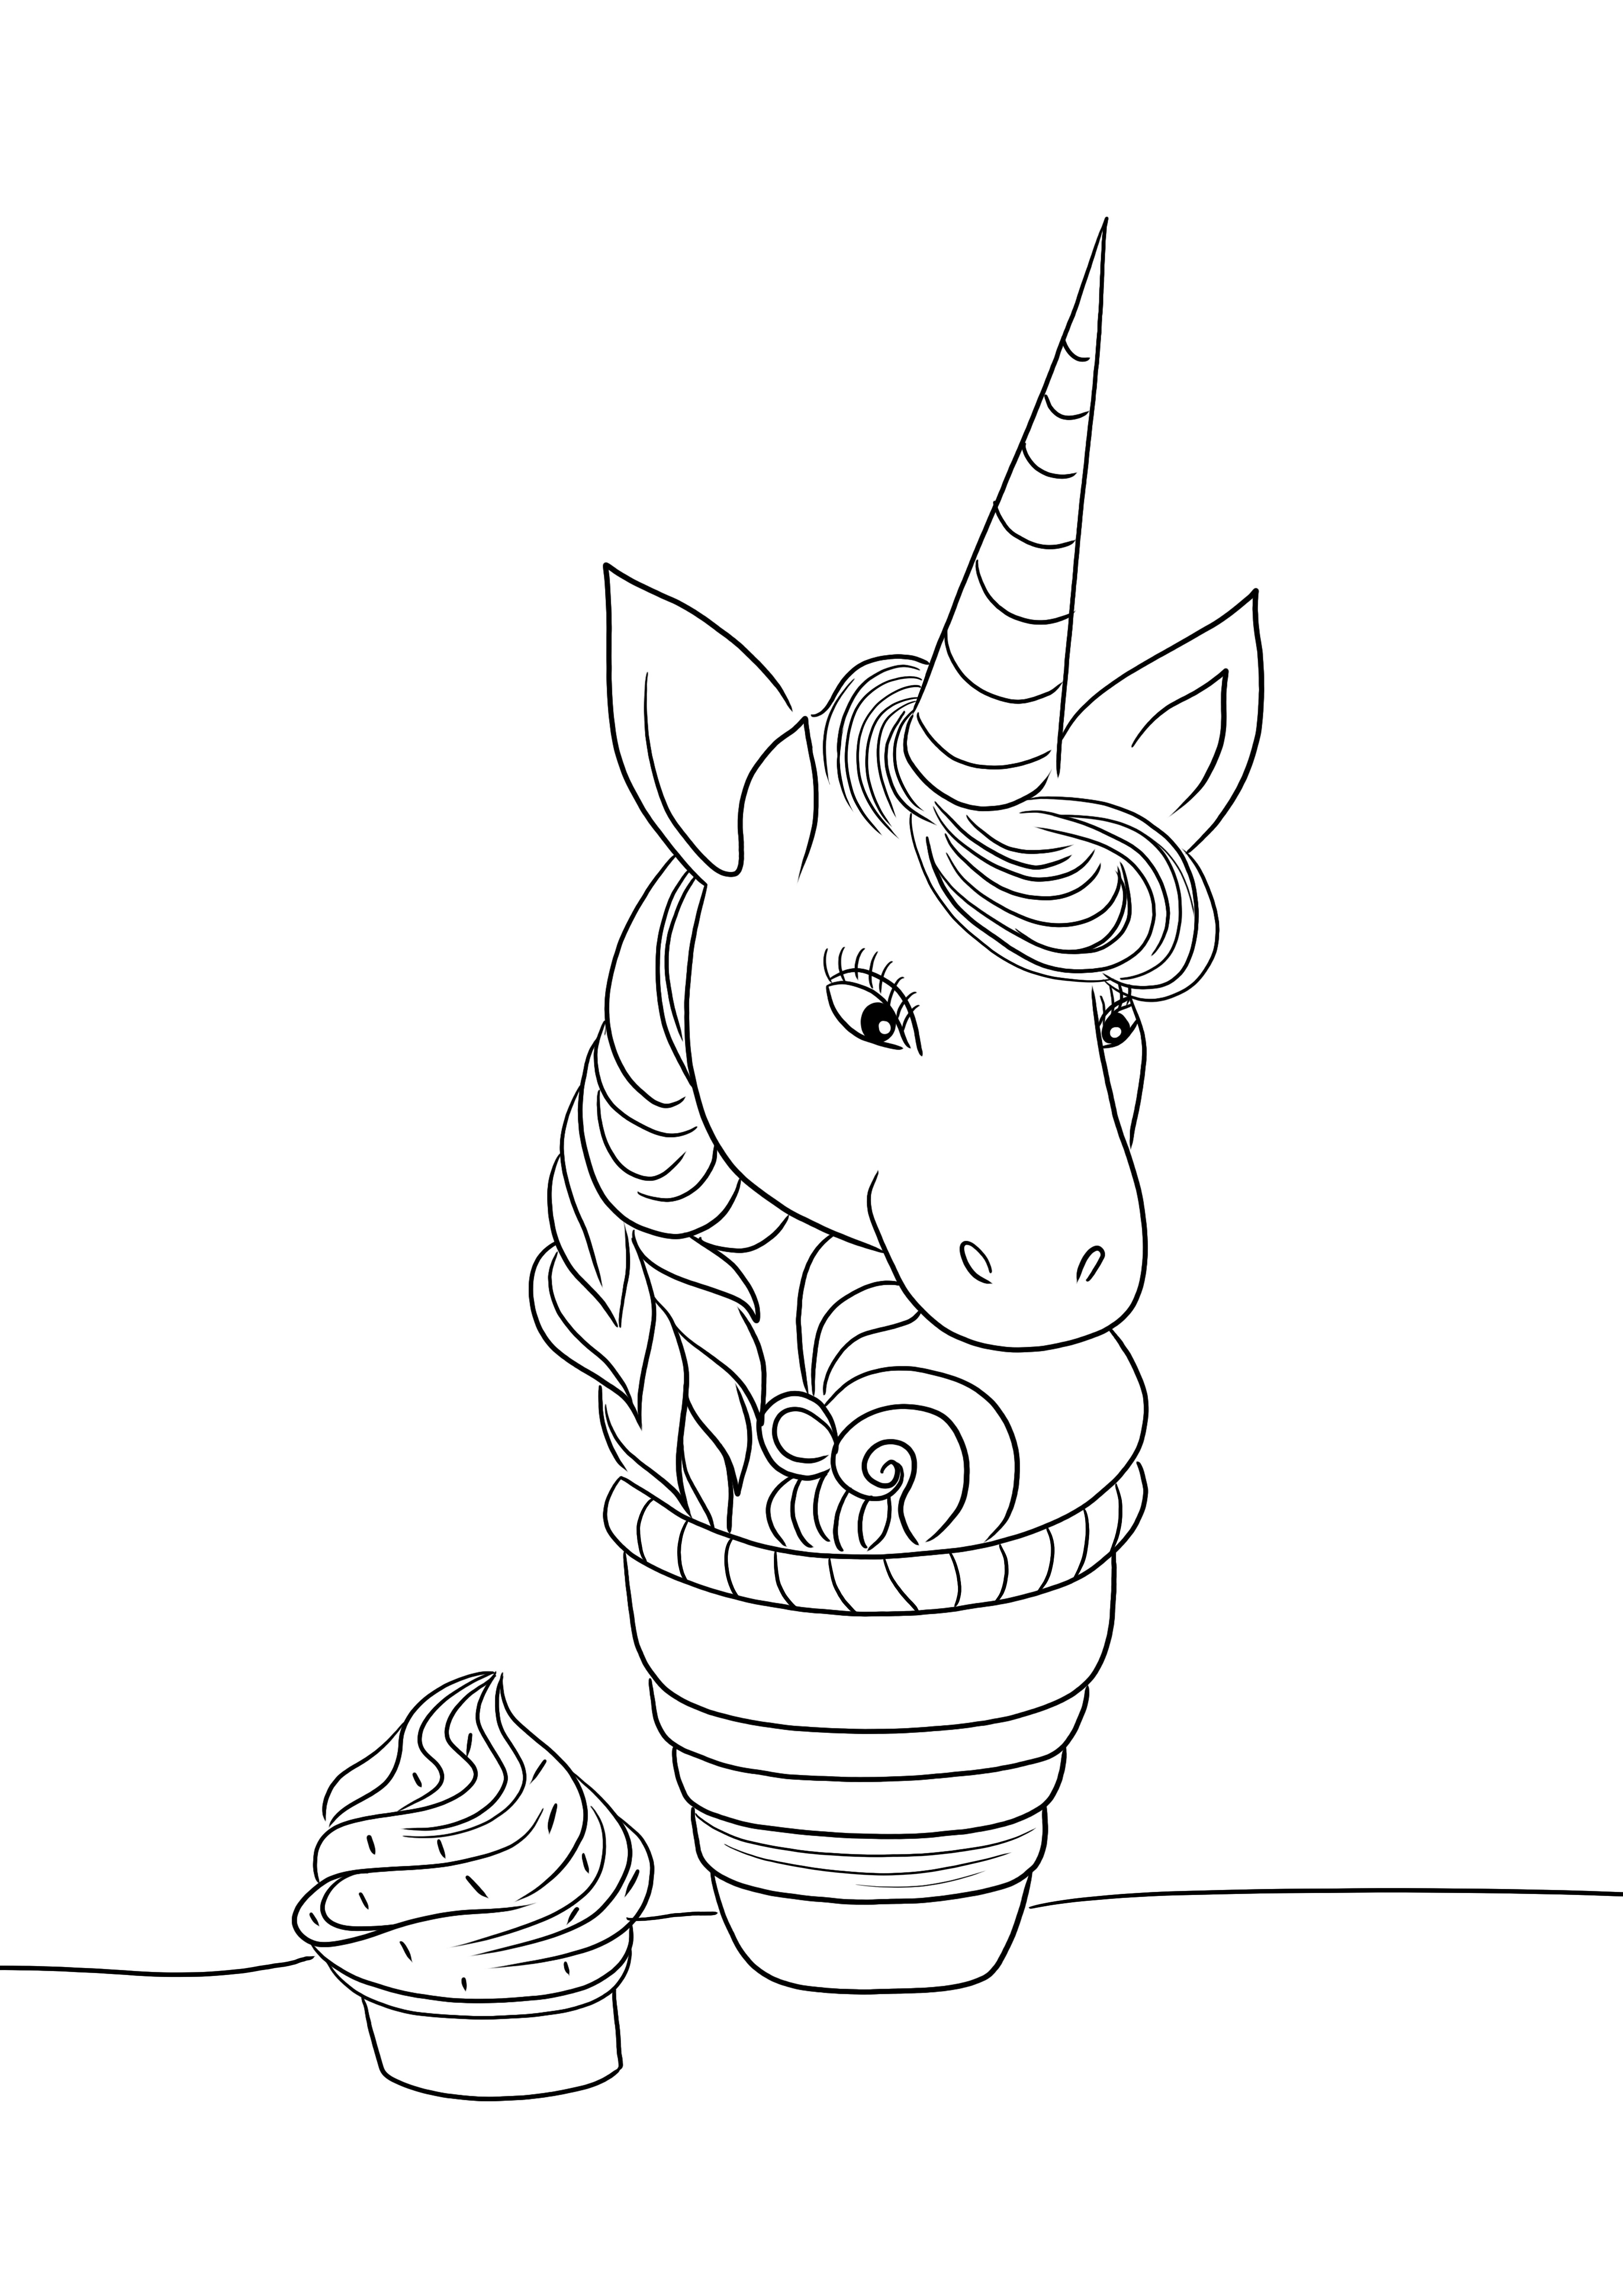 Cupcake unicorno divertente facile e gratuito da colorare e stampare per i bambini